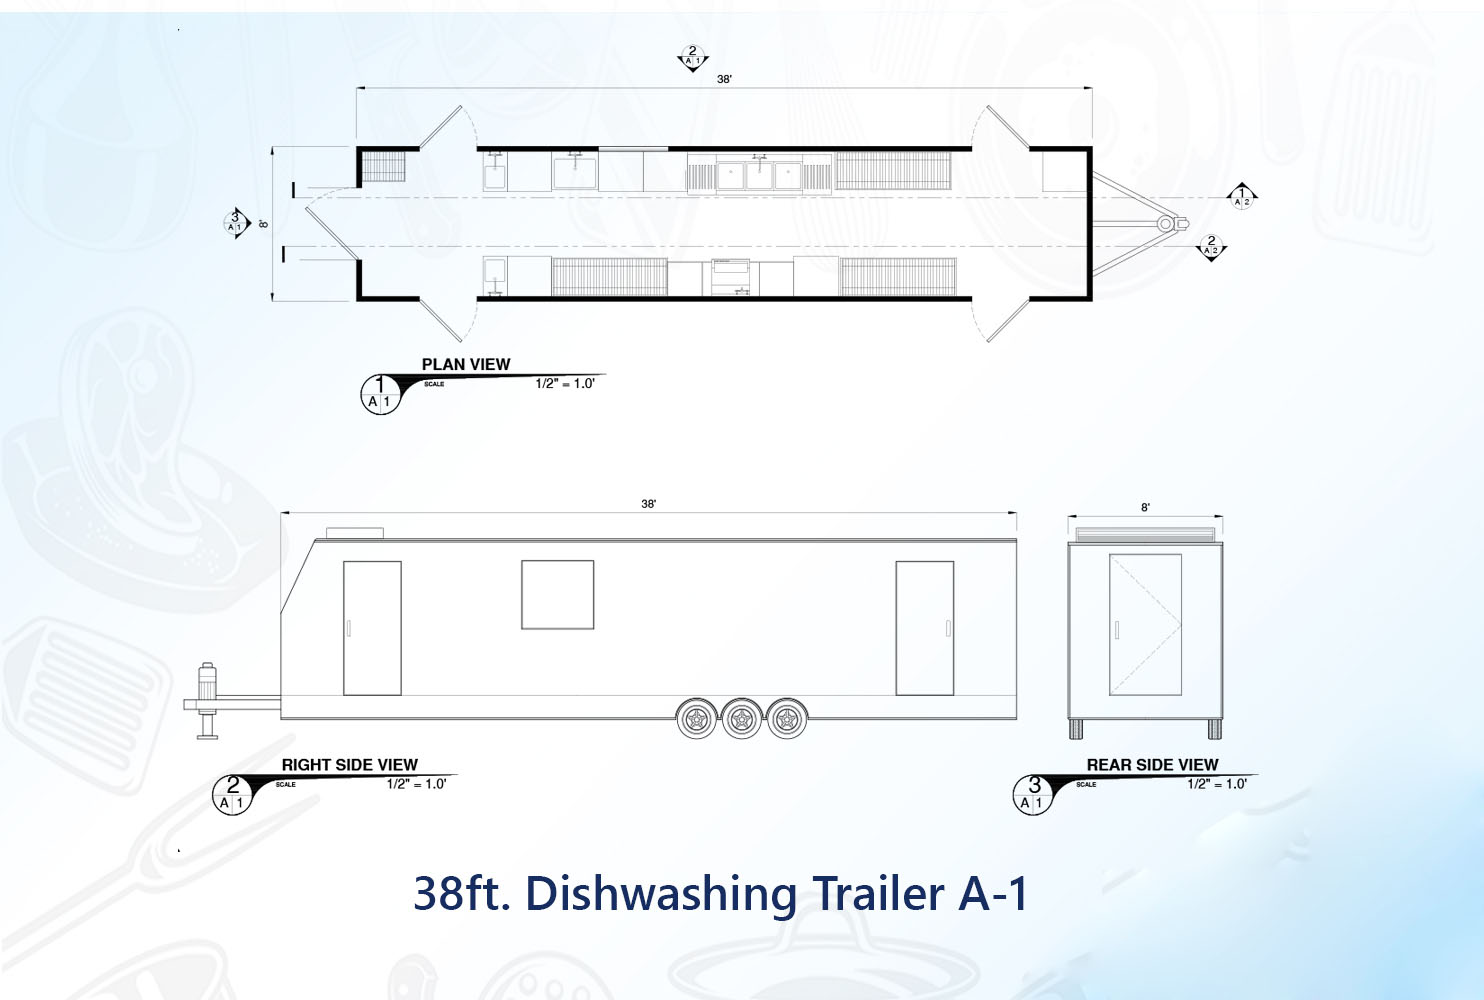 38 ft Dishwashing Trailer A-1